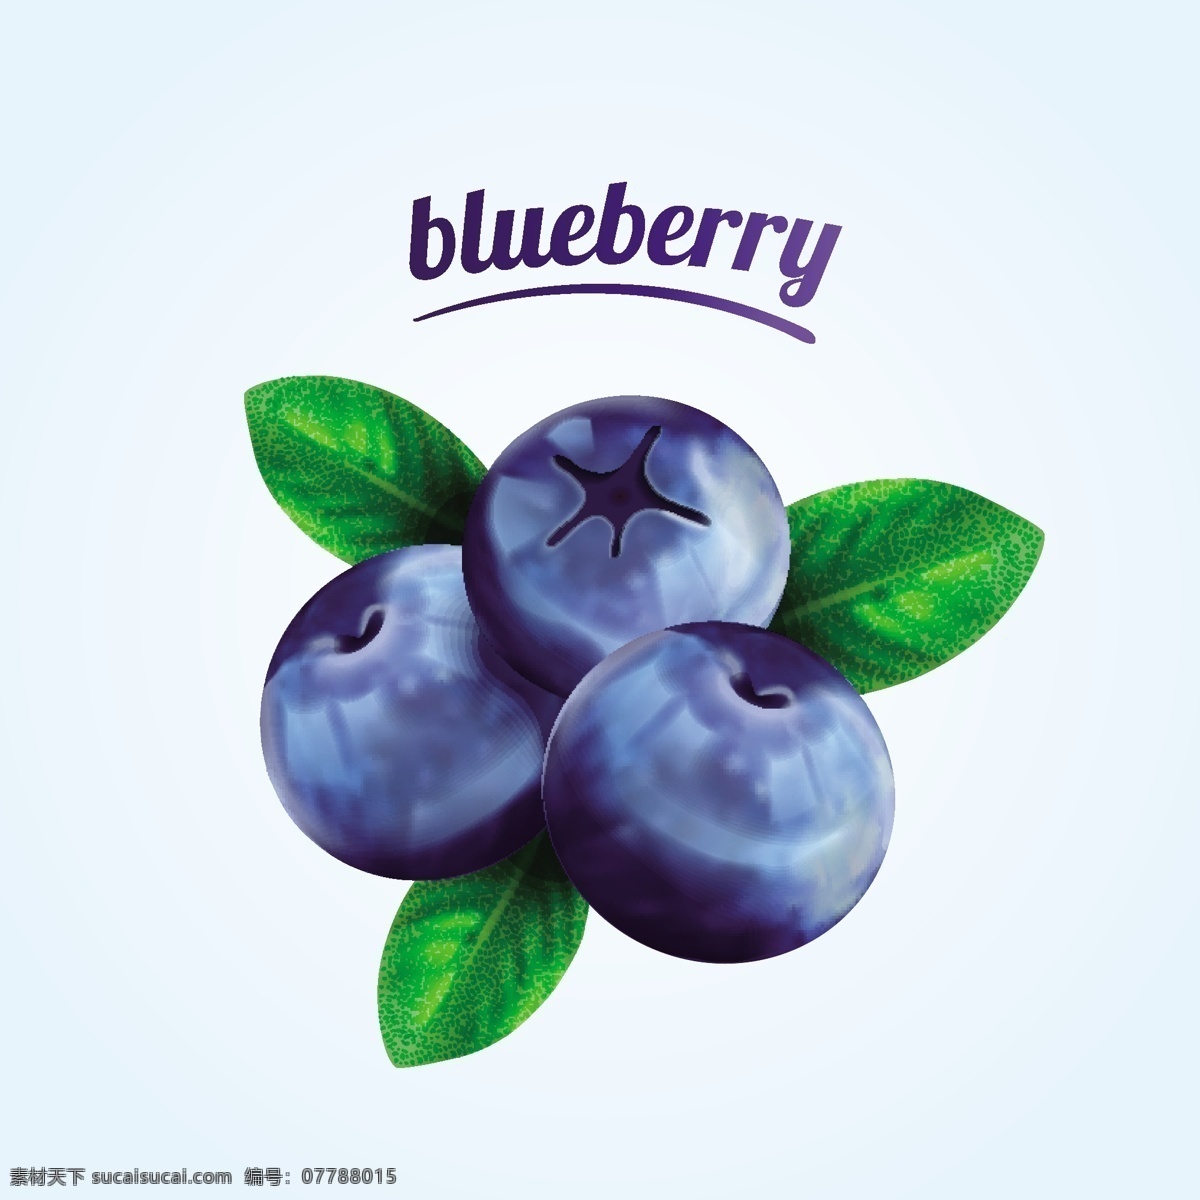 蓝莓 水果 新鲜 矢量 食品 食品蔬菜水果 生物世界